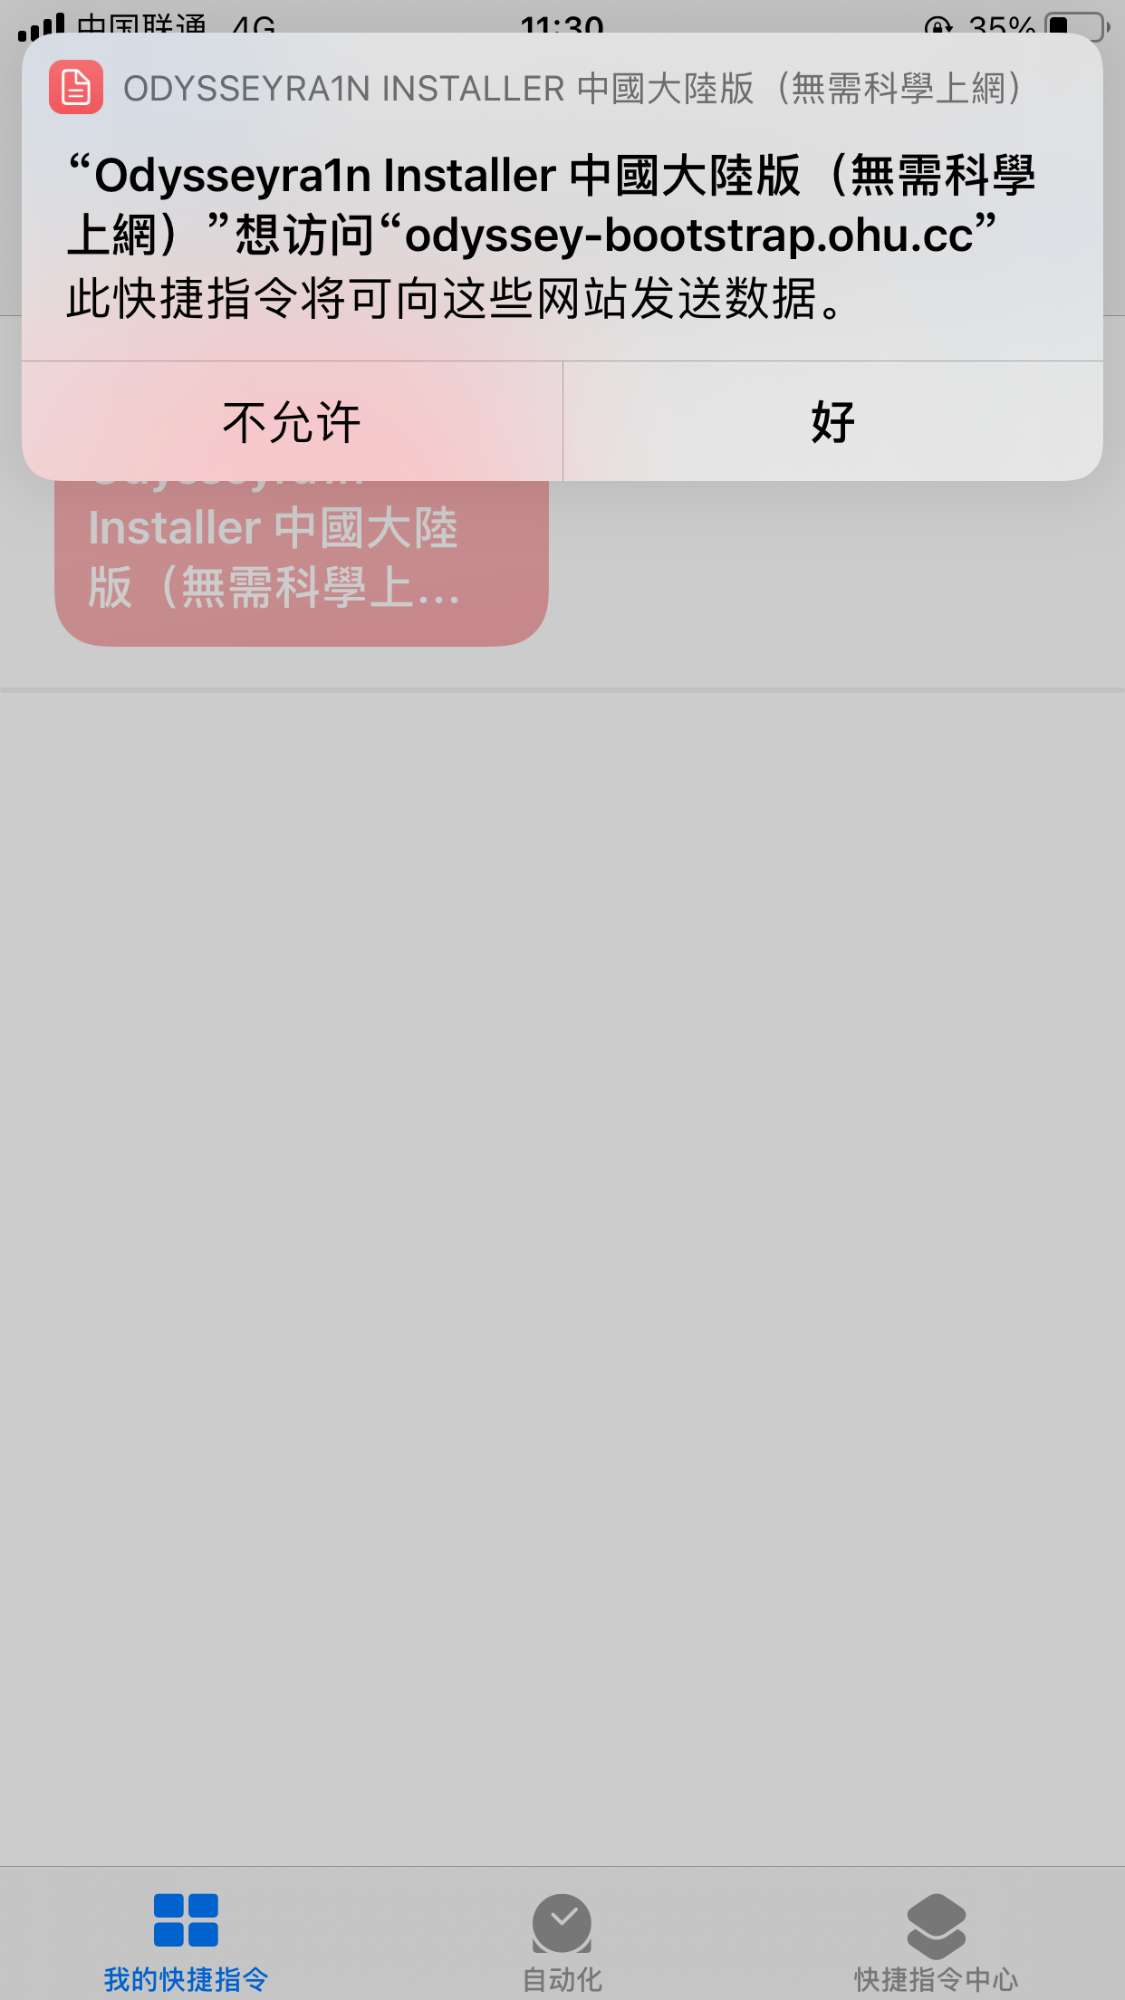 捷径安装 Odysseyra1n for iOS 12 - 14 - 图9